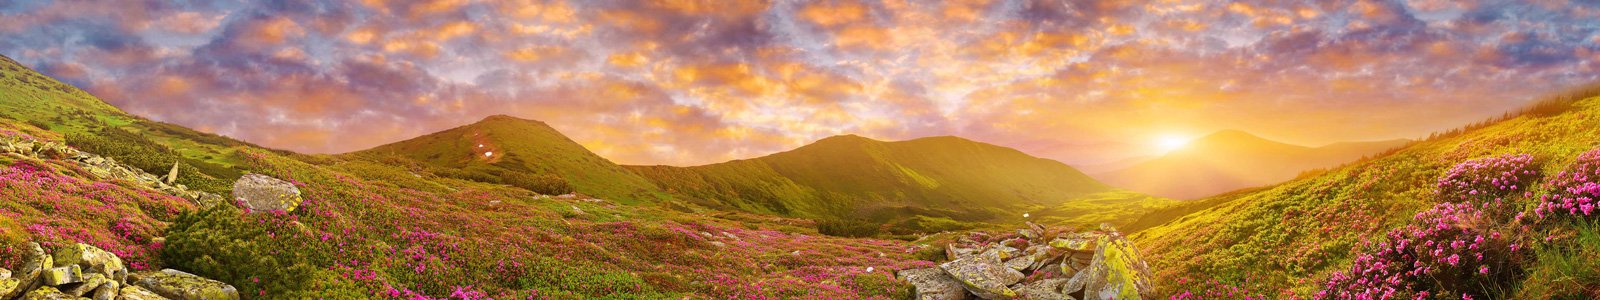 №7226 - Цветы в горах в лучах закатного солнца